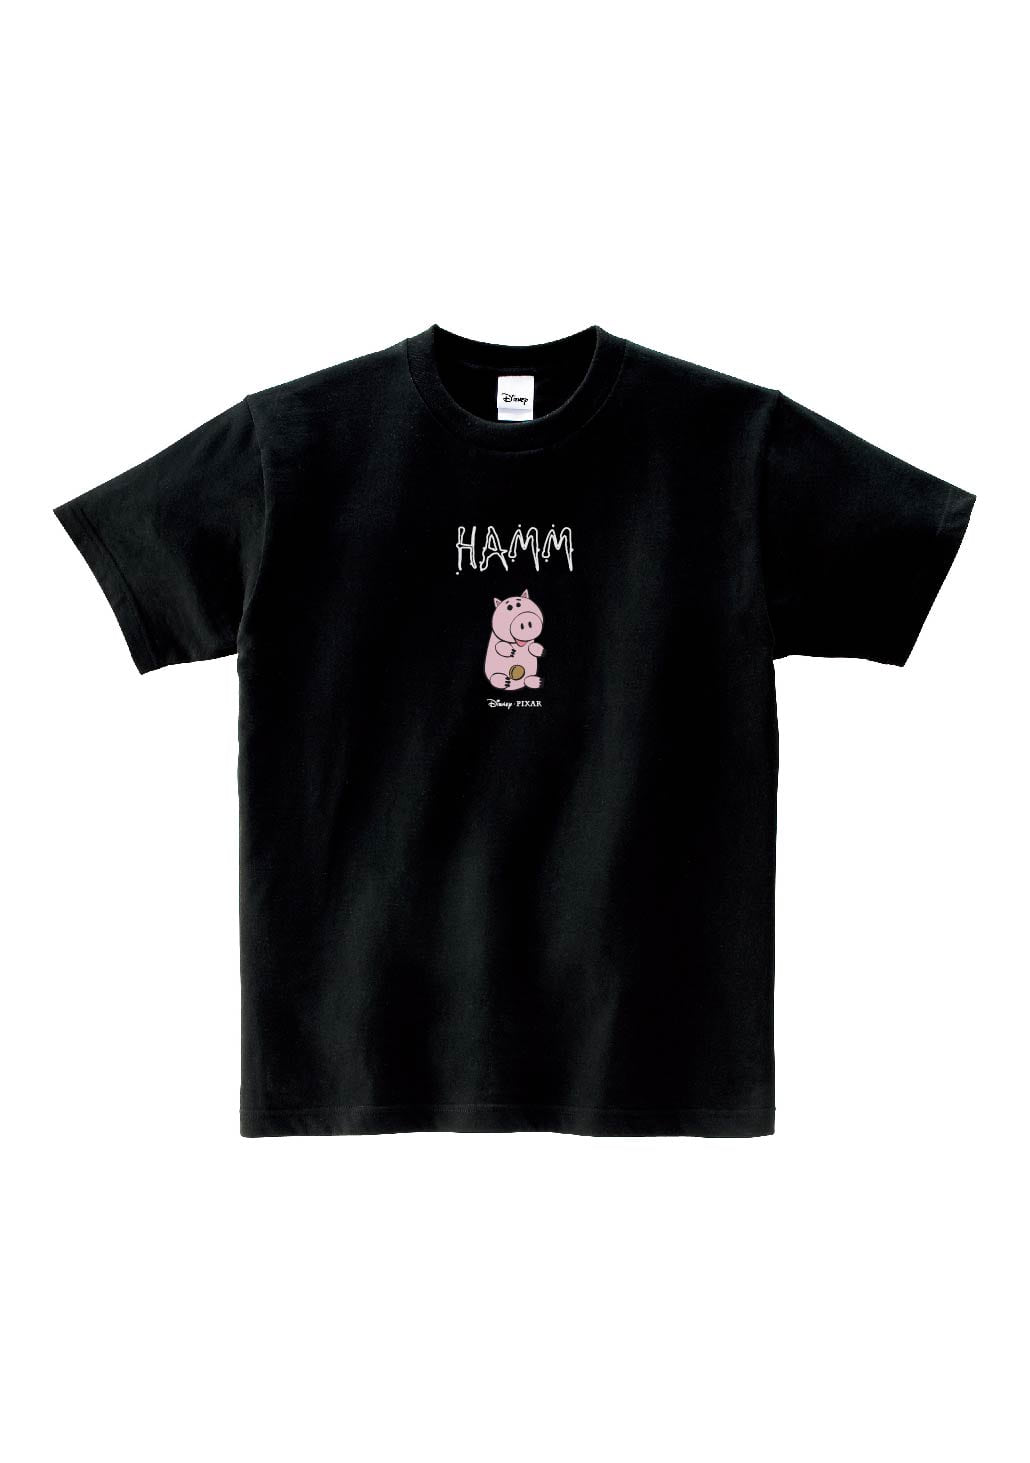 Mini Hamm (Black)